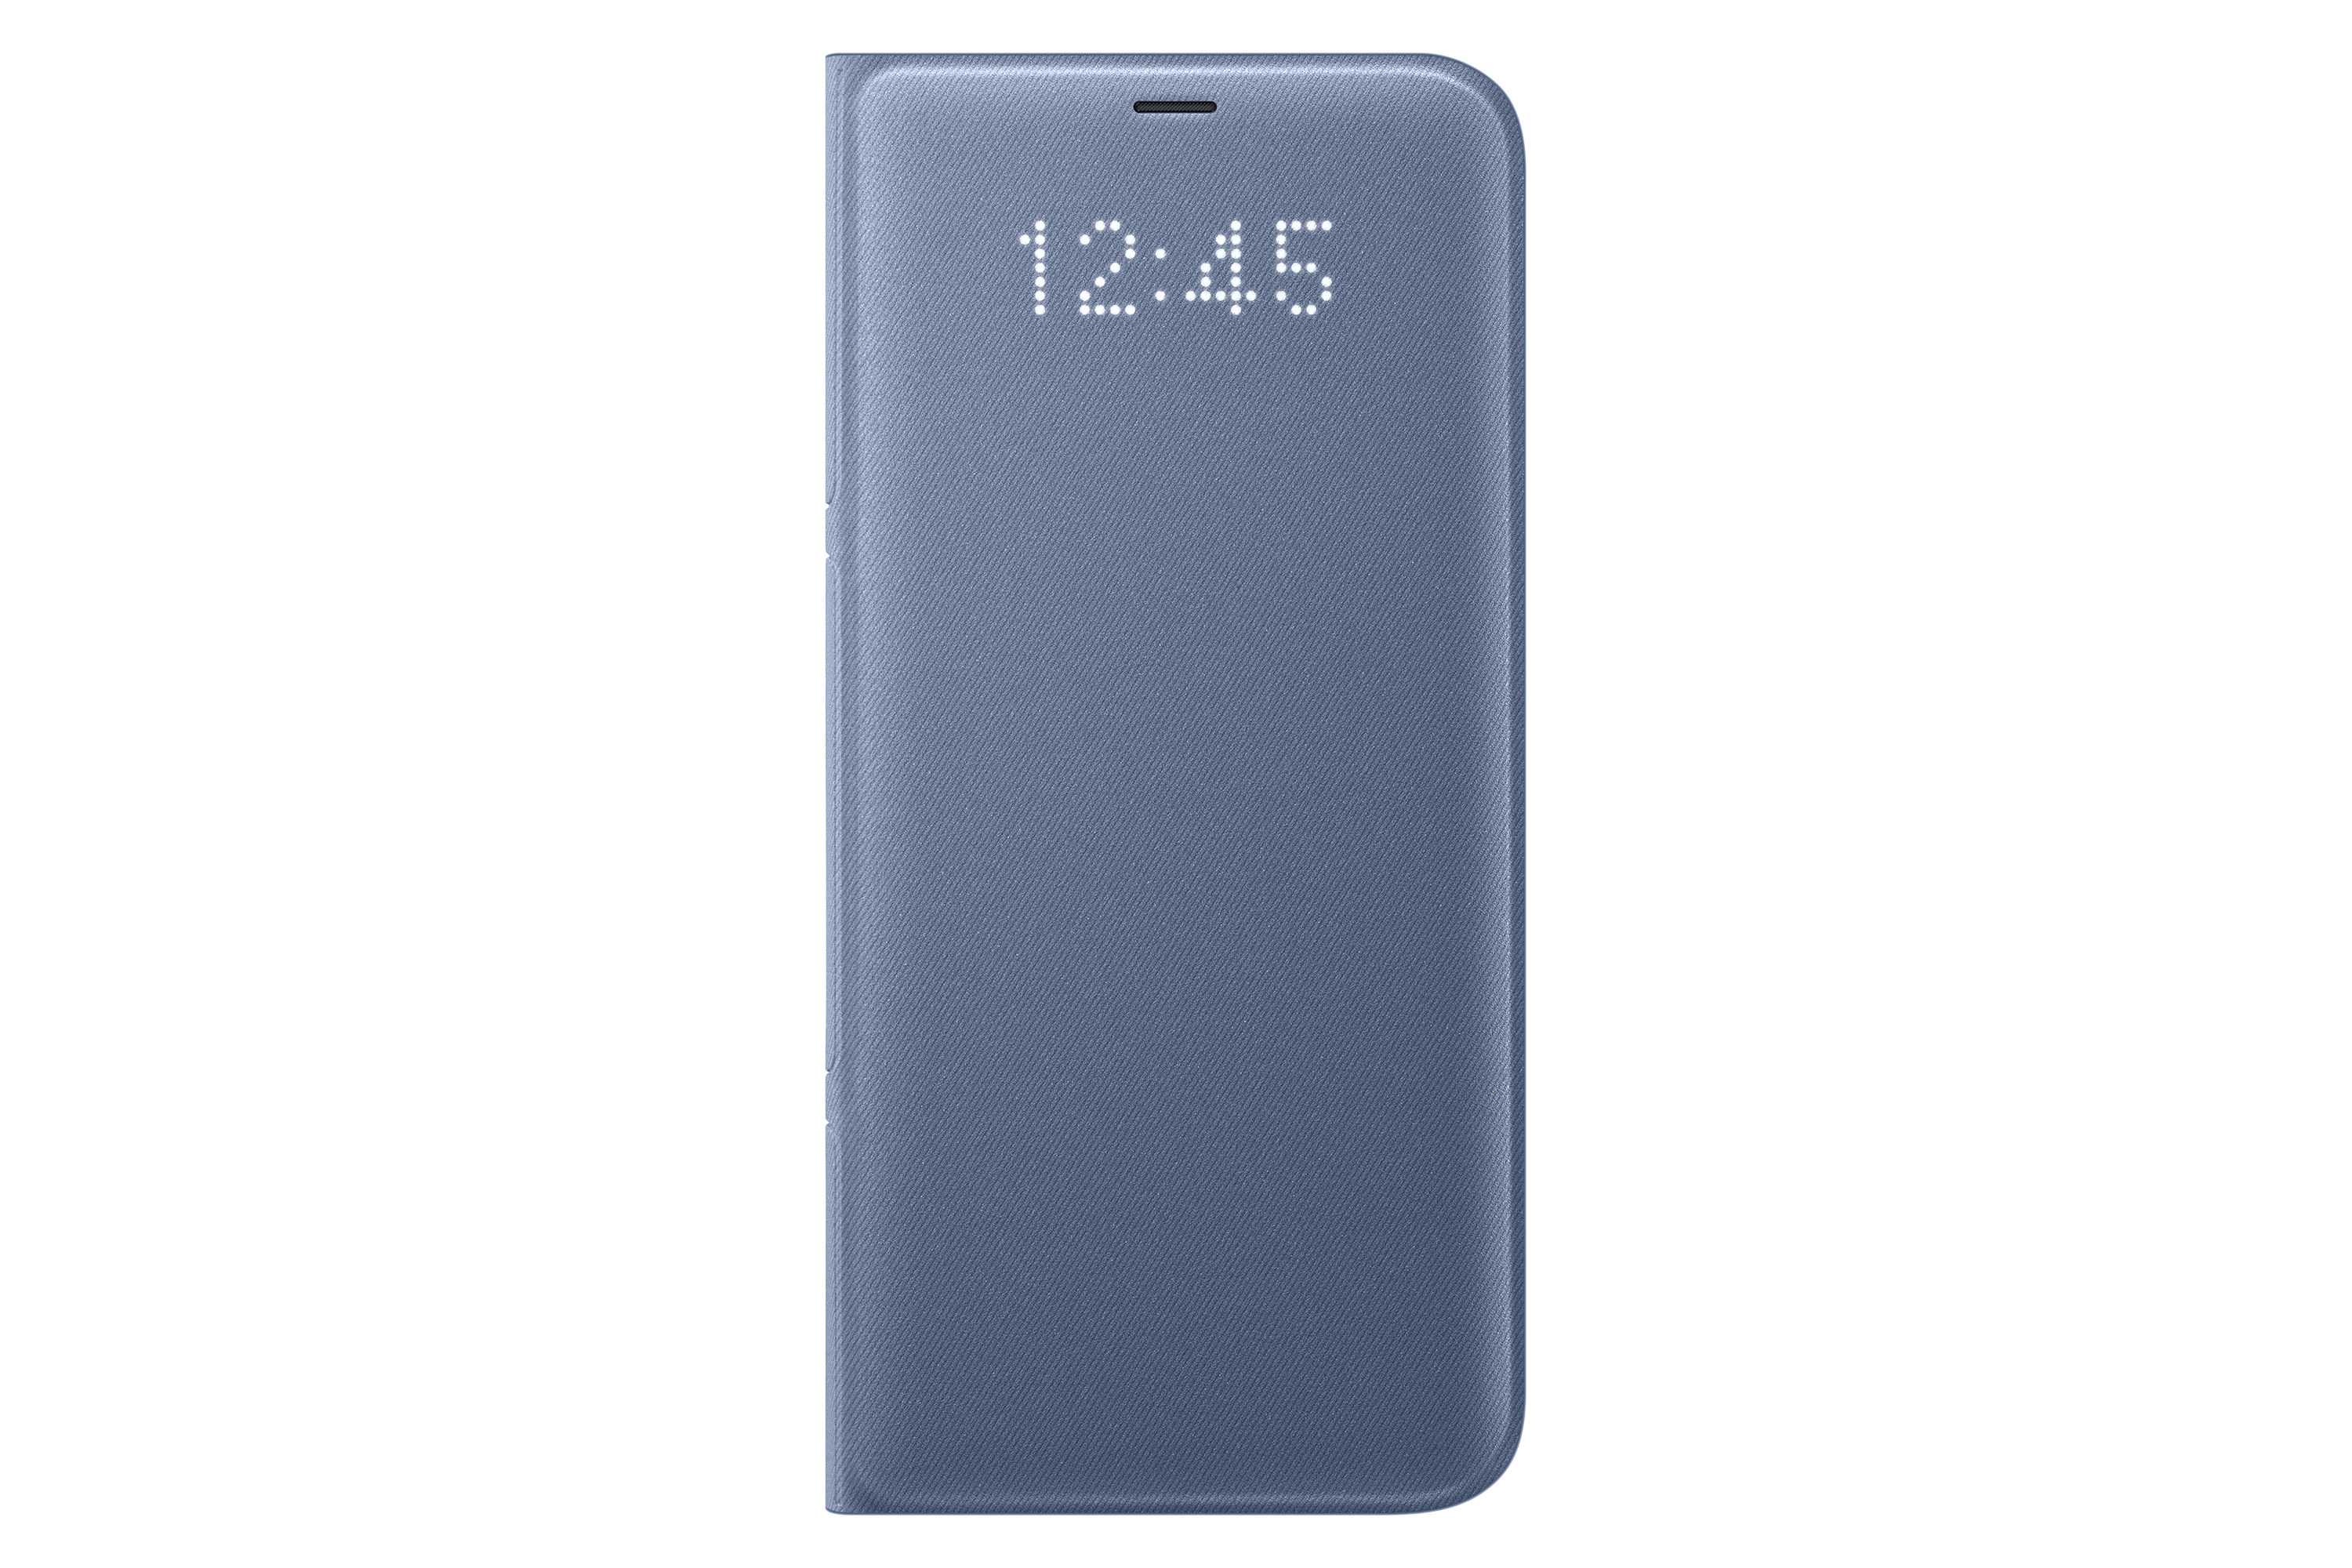 Samsung EF-NG955 blauw / Galaxy S8+